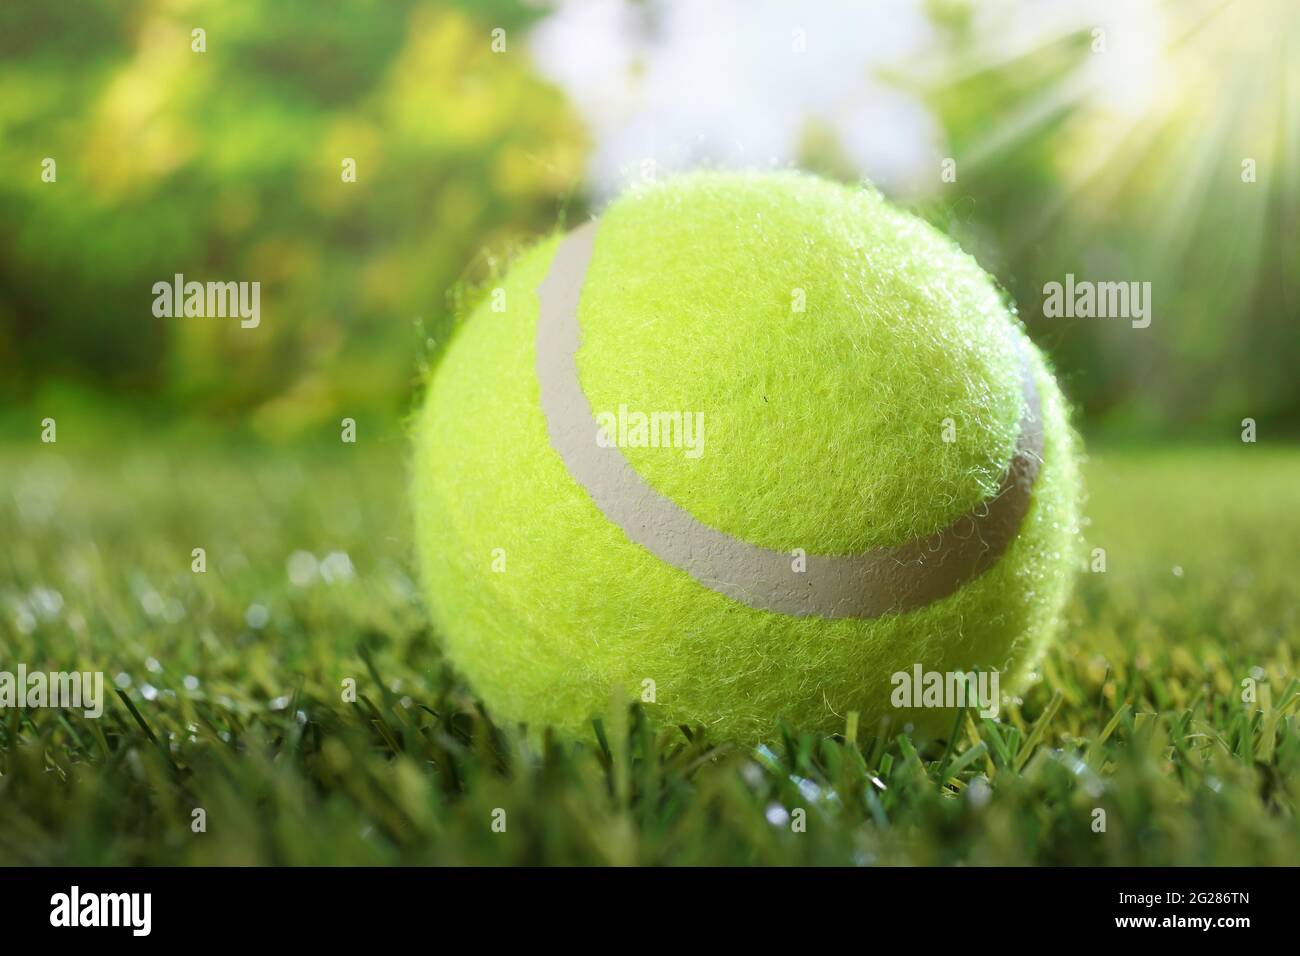 Gros plan de la balle de tennis verte sur une pelouse herbacée contre des  arbres flous et la lumière du soleil brillante pour l'activité estivale et  le concept de jeu sportif Photo